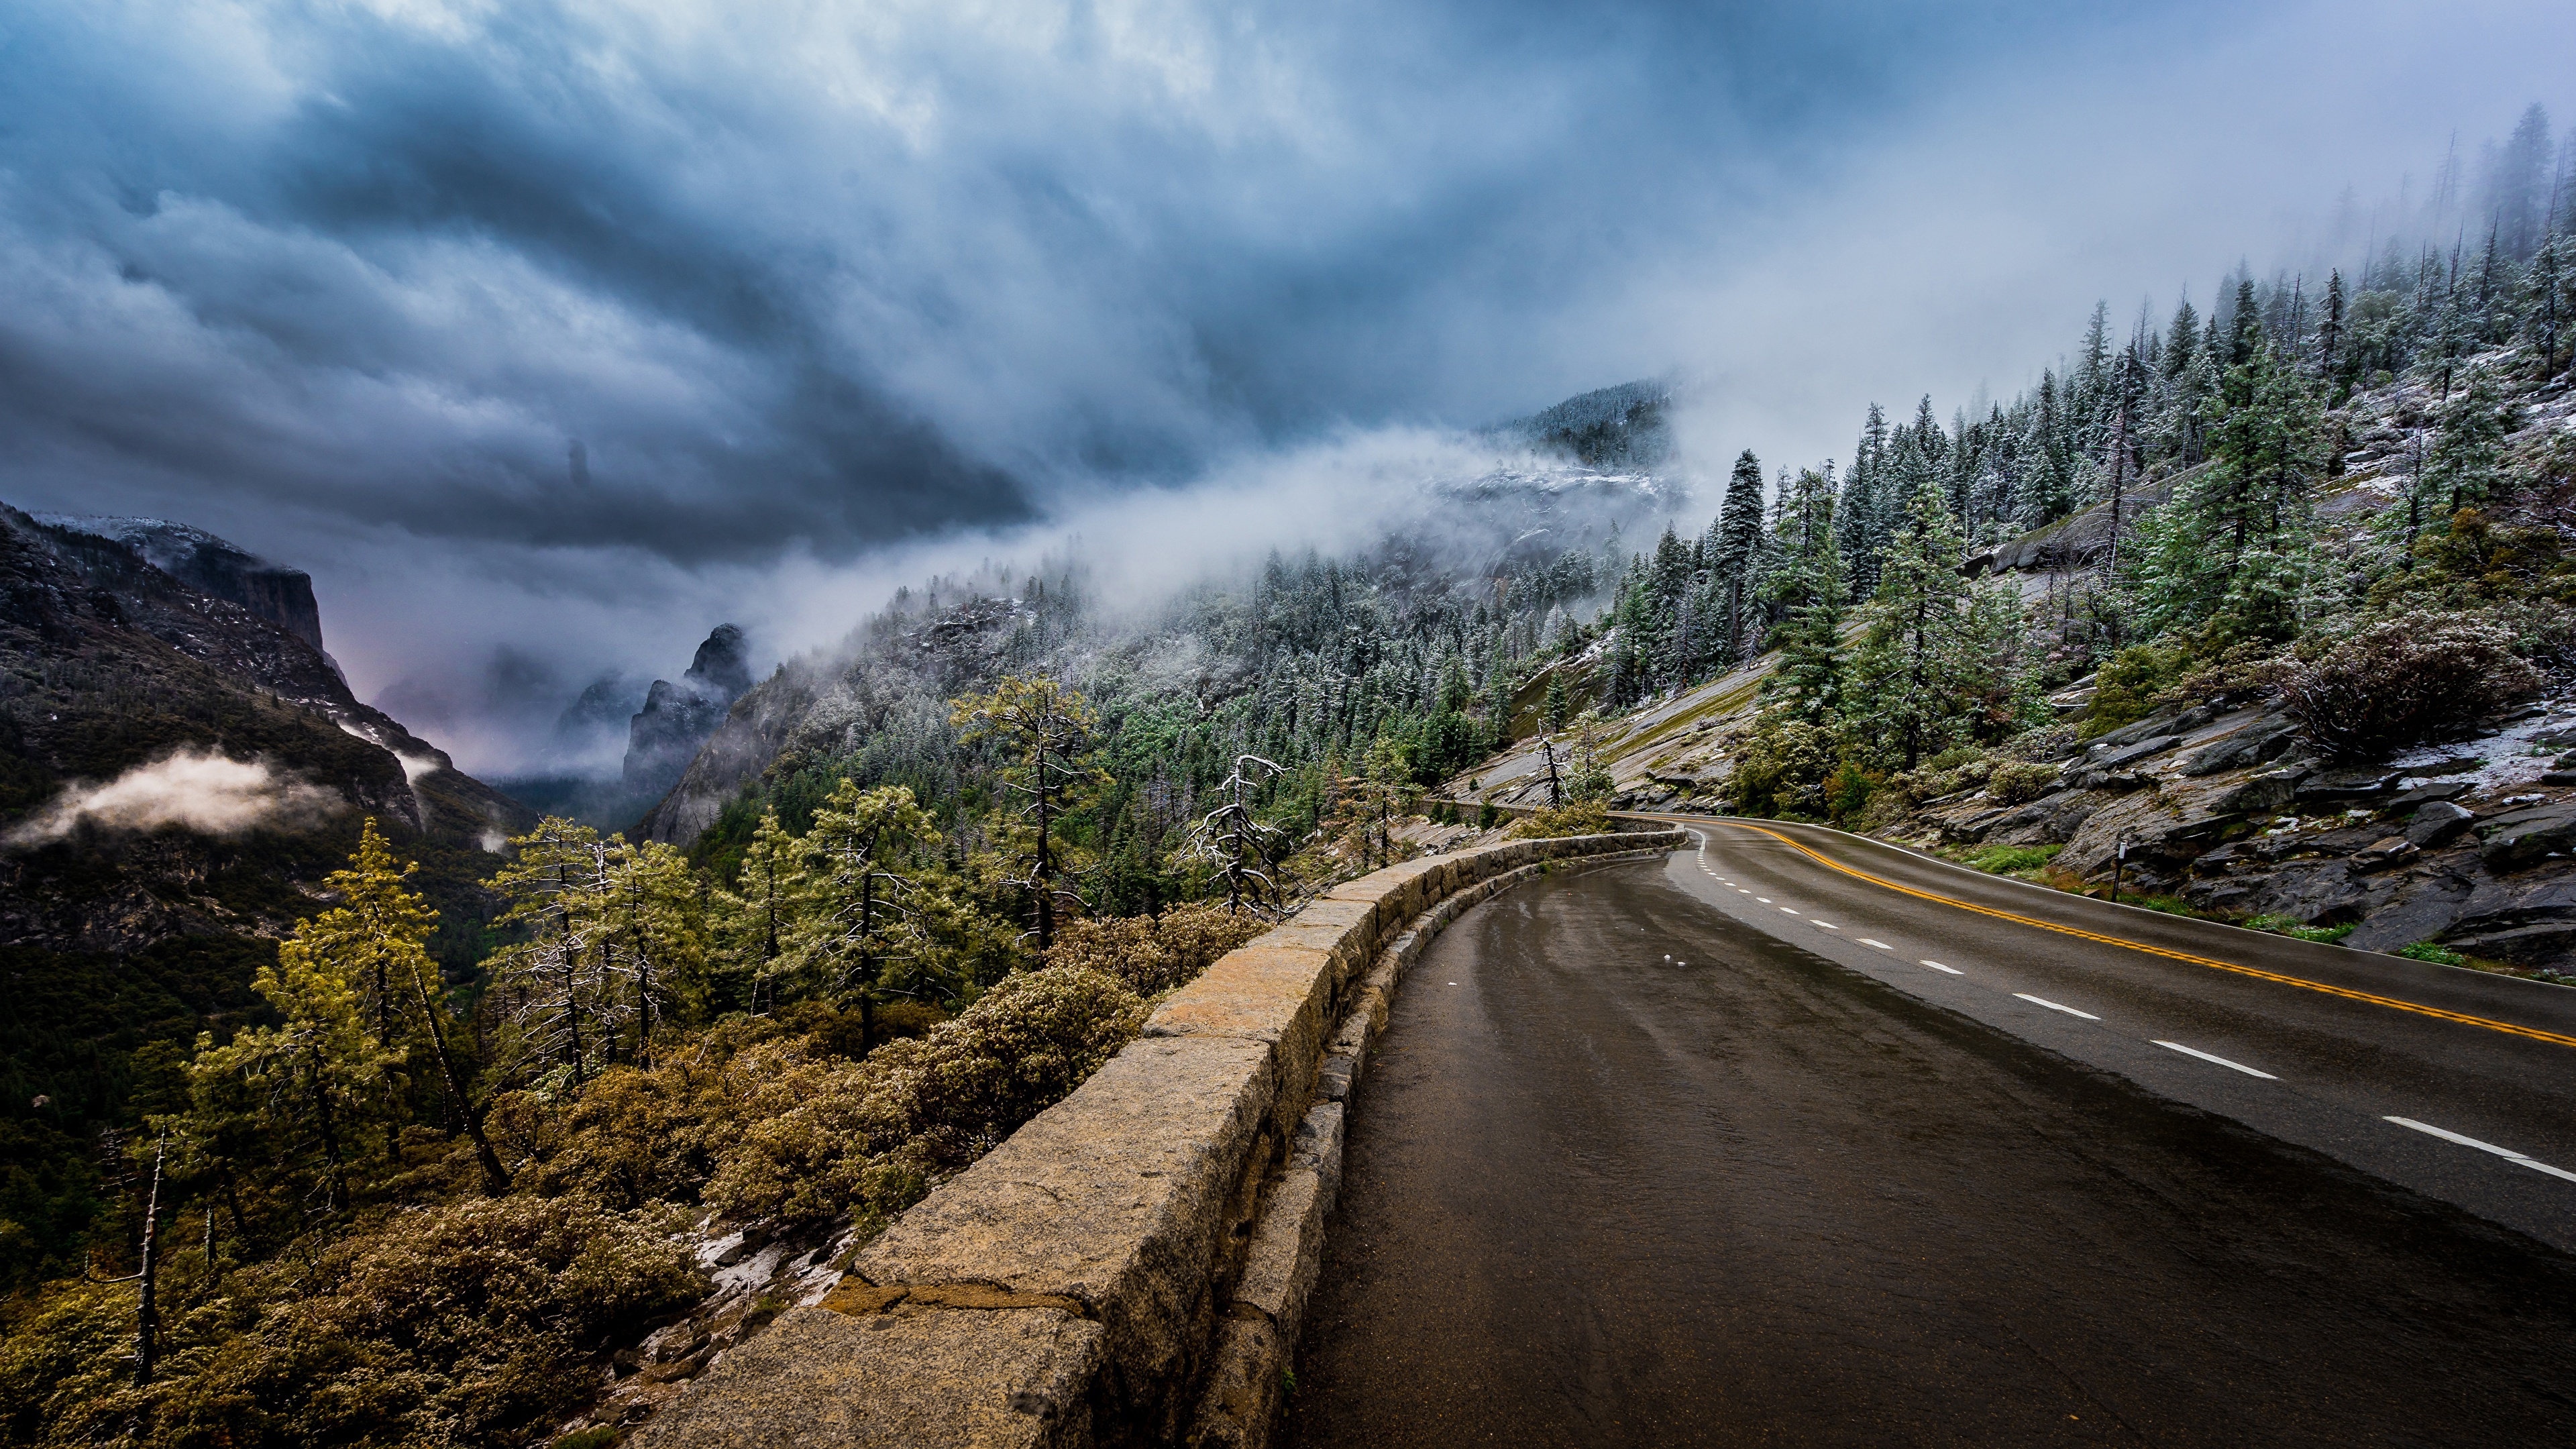 壁紙 3840x2160 道 山 アメリカ合衆国 風景写真 Sierra Nevada 雲 木 ヨセミテ国立公園 霧 カリフォルニア州 自然 ダウンロード 写真